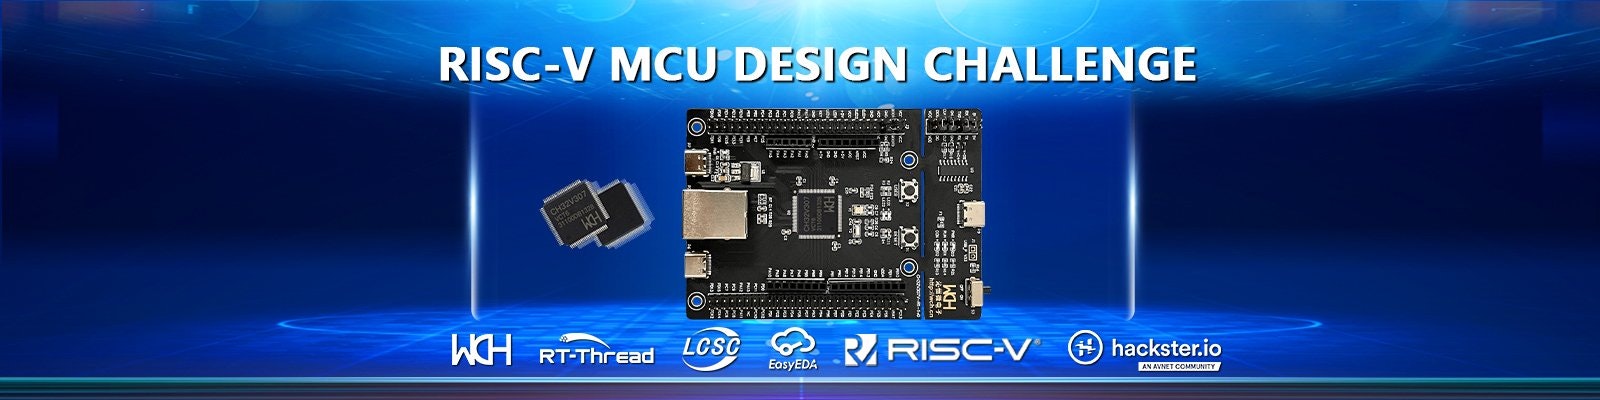 Hack It! RISC-V Design Challenge